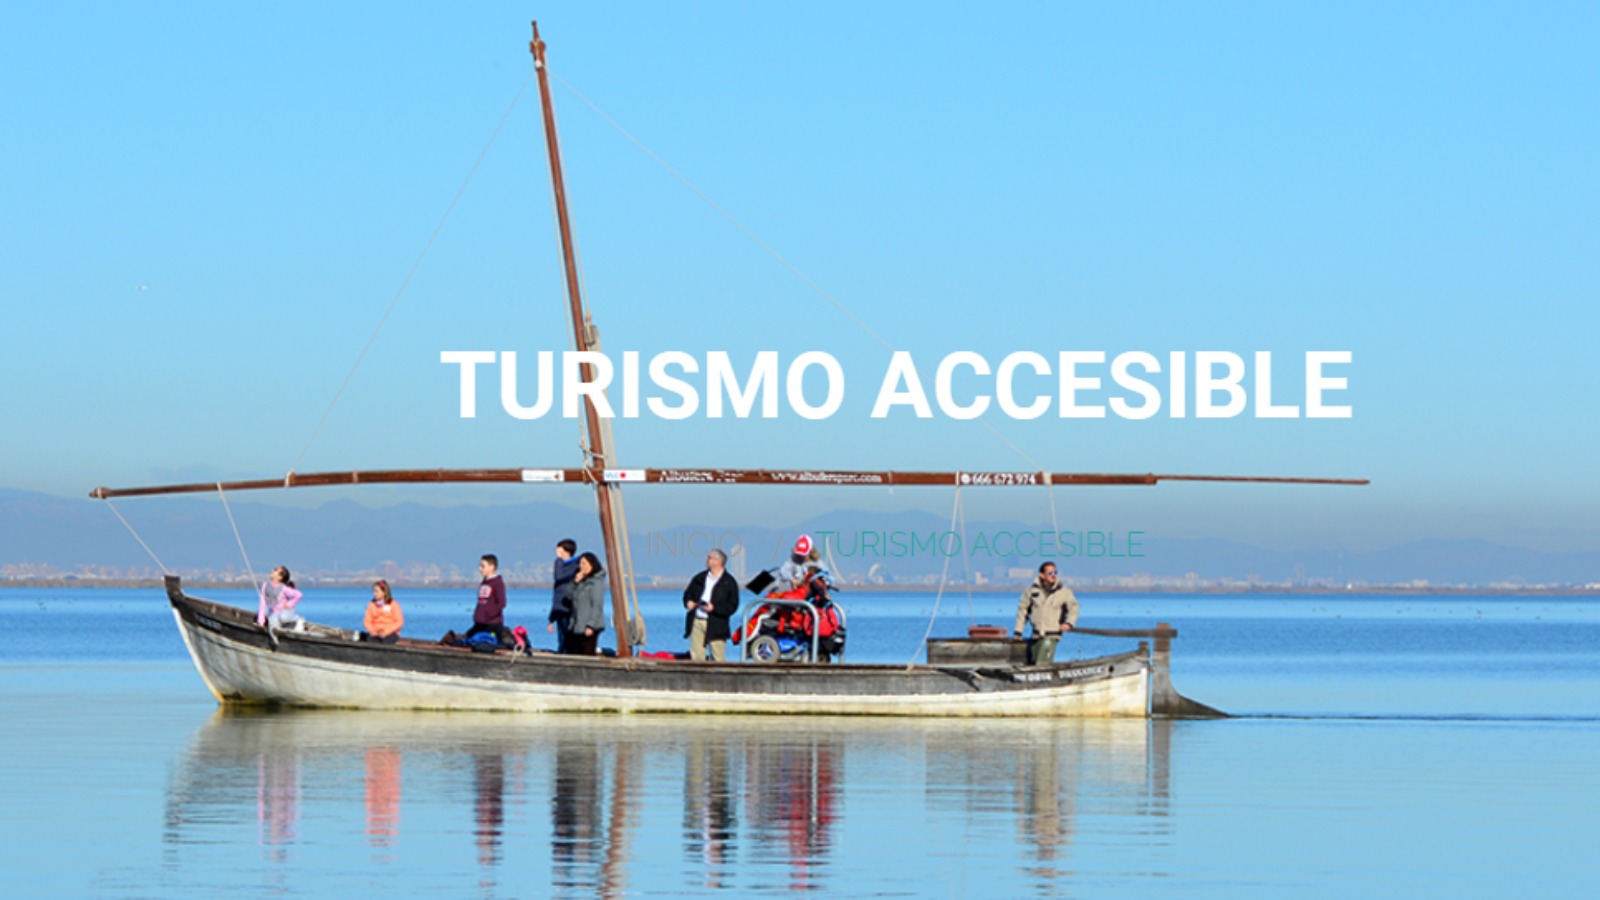 Imagen de la web de Cocemfe CV con una barca de la Albufera equipada para personas en silla de ruedas. Aparece el rótulo 'Turismo accesible', con letras mayúsculas en blanco